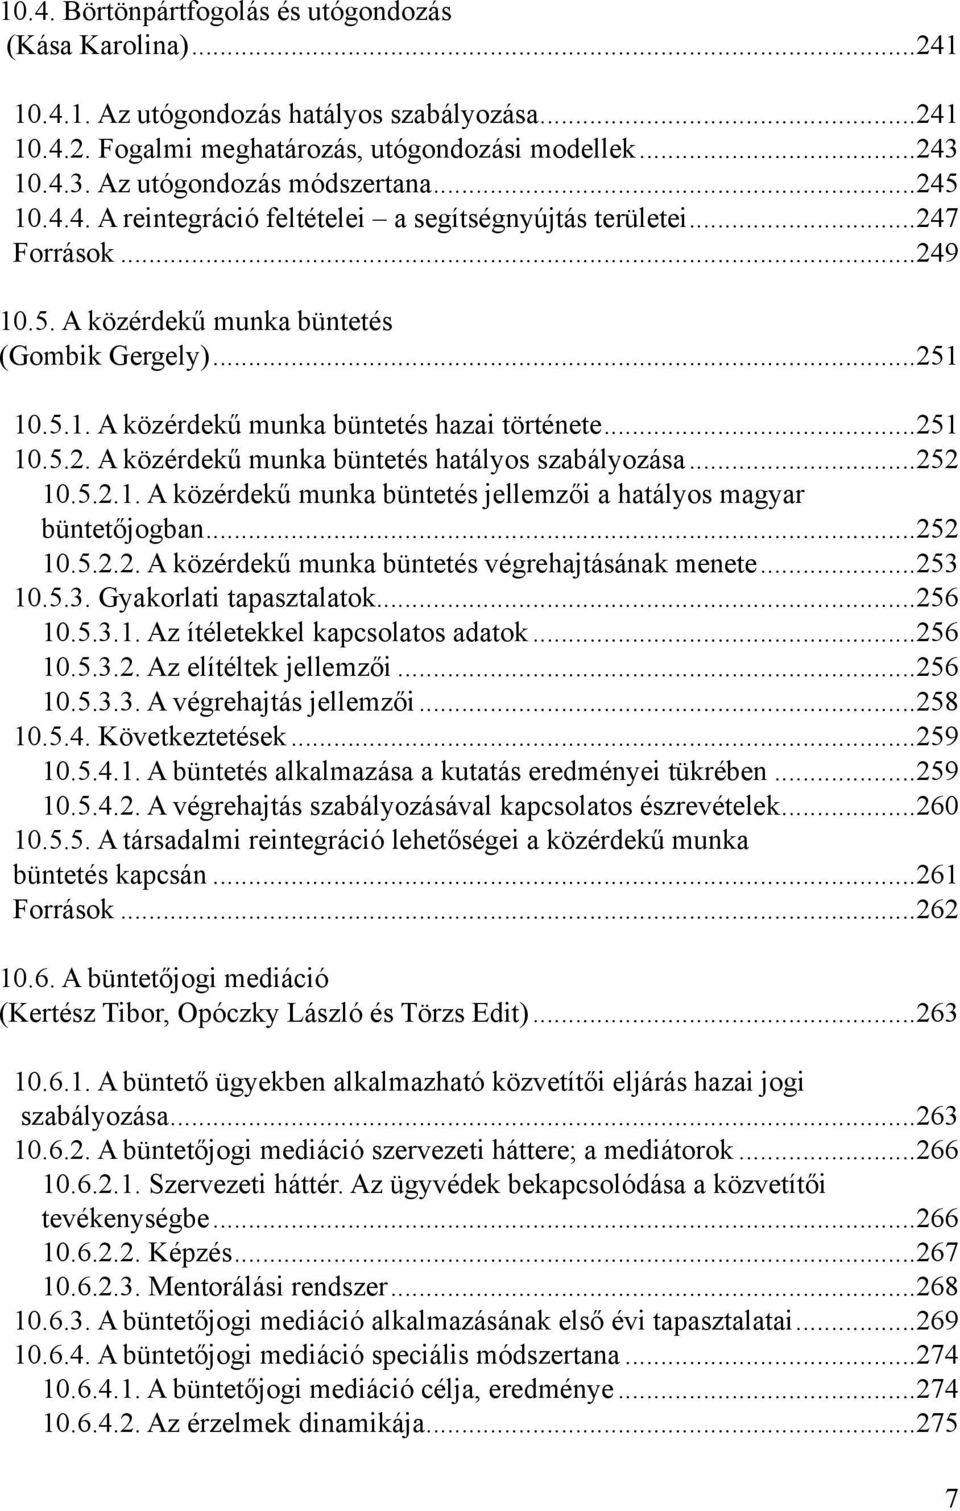 ..251 10.5.2. A közérdekű munka büntetés hatályos szabályozása...252 10.5.2.1. A közérdekű munka büntetés jellemzői a hatályos magyar büntetőjogban...252 10.5.2.2. A közérdekű munka büntetés végrehajtásának menete.